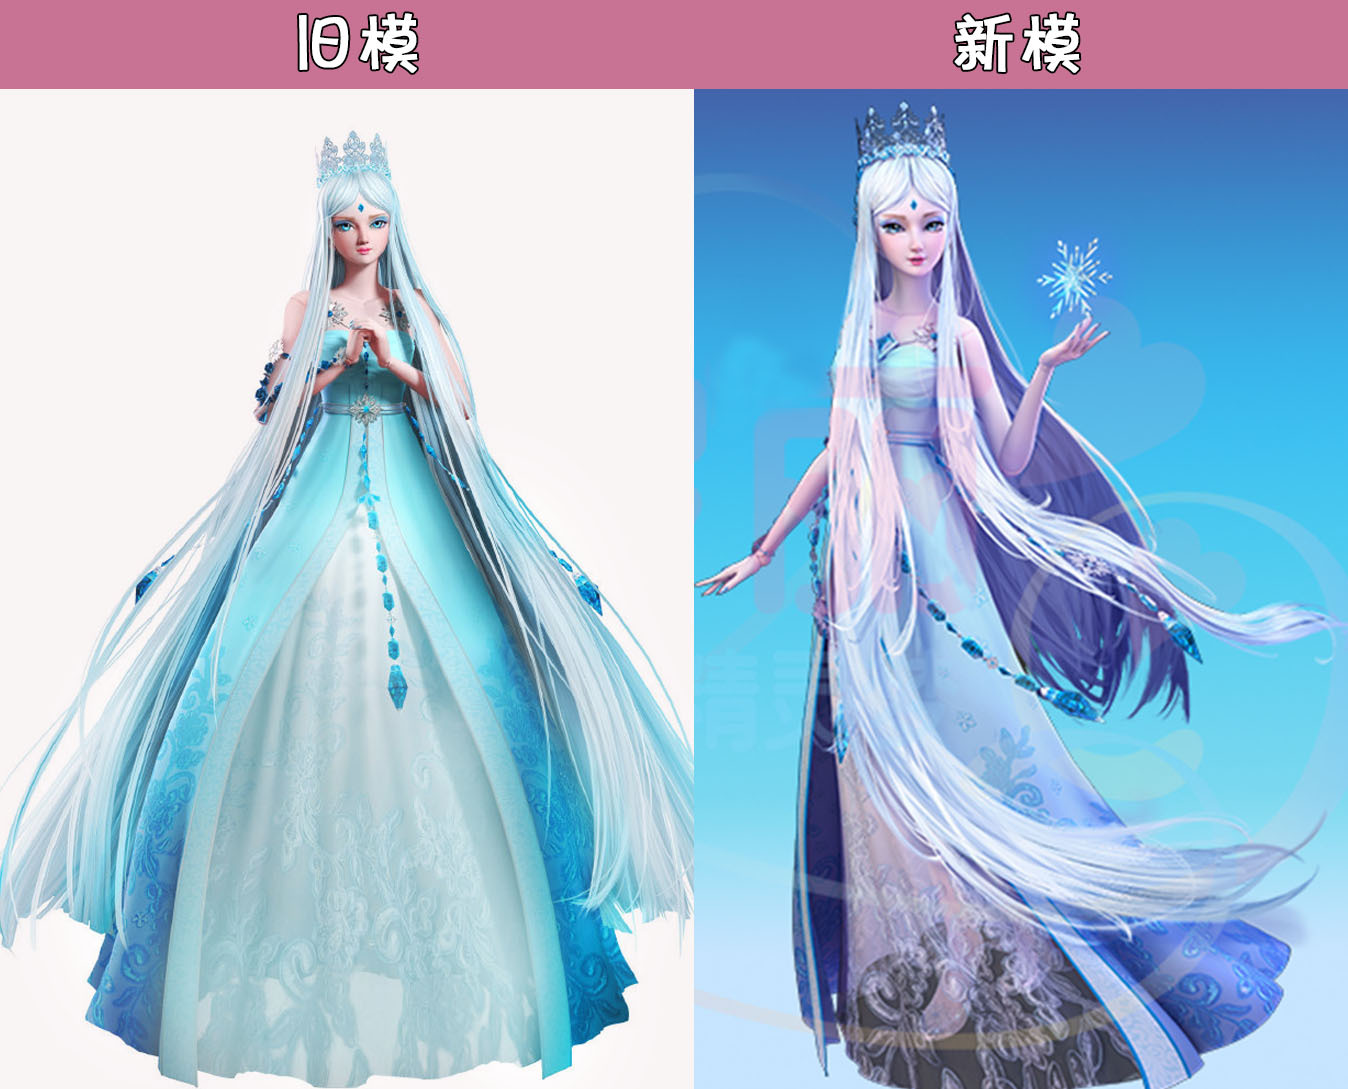 叶罗丽:冰公主终于有新模了?裙摆新花纹,发丝飘逸,颜值更高了